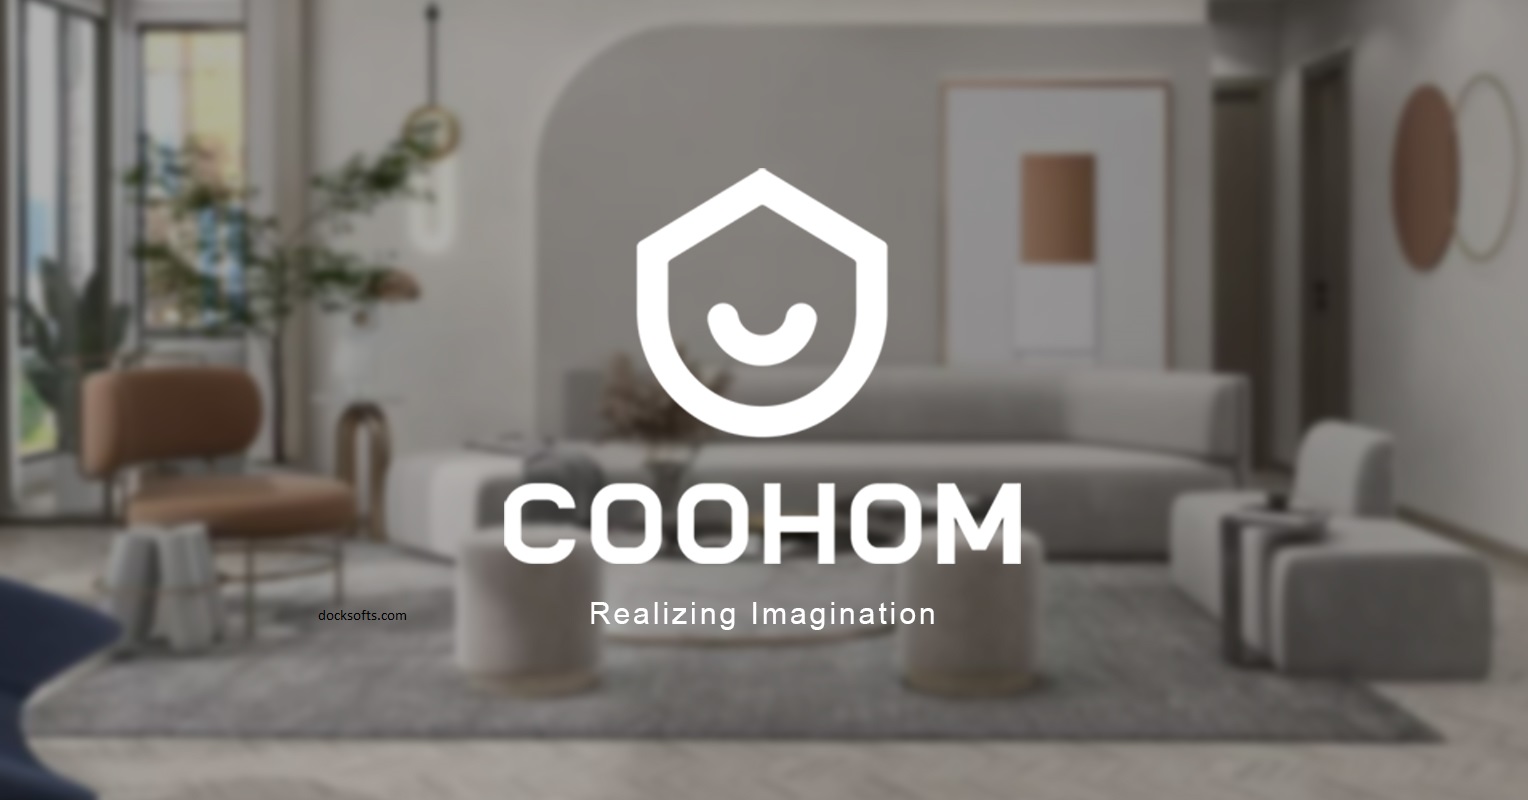 Coohom 3D Pro v1.3.2.2 Crack